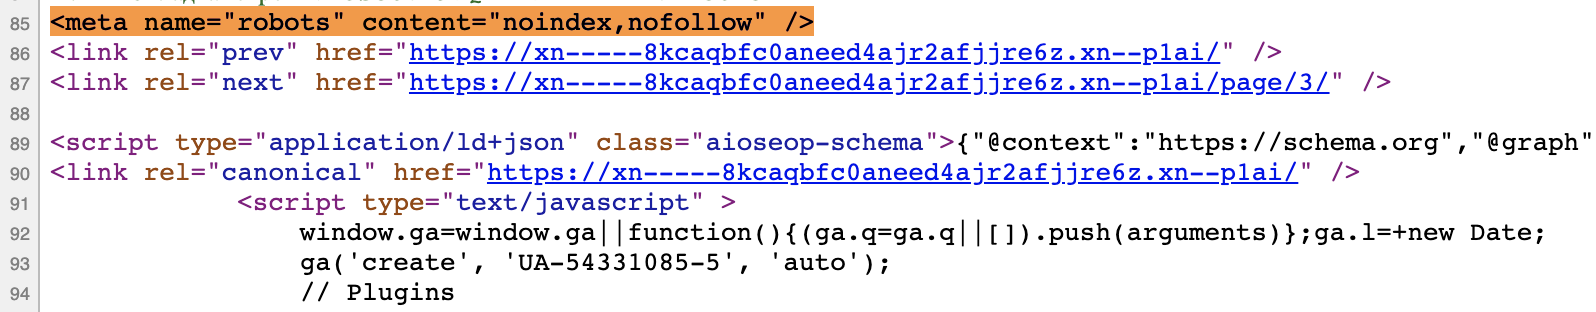 Пример тега noindex follow в коде сайта